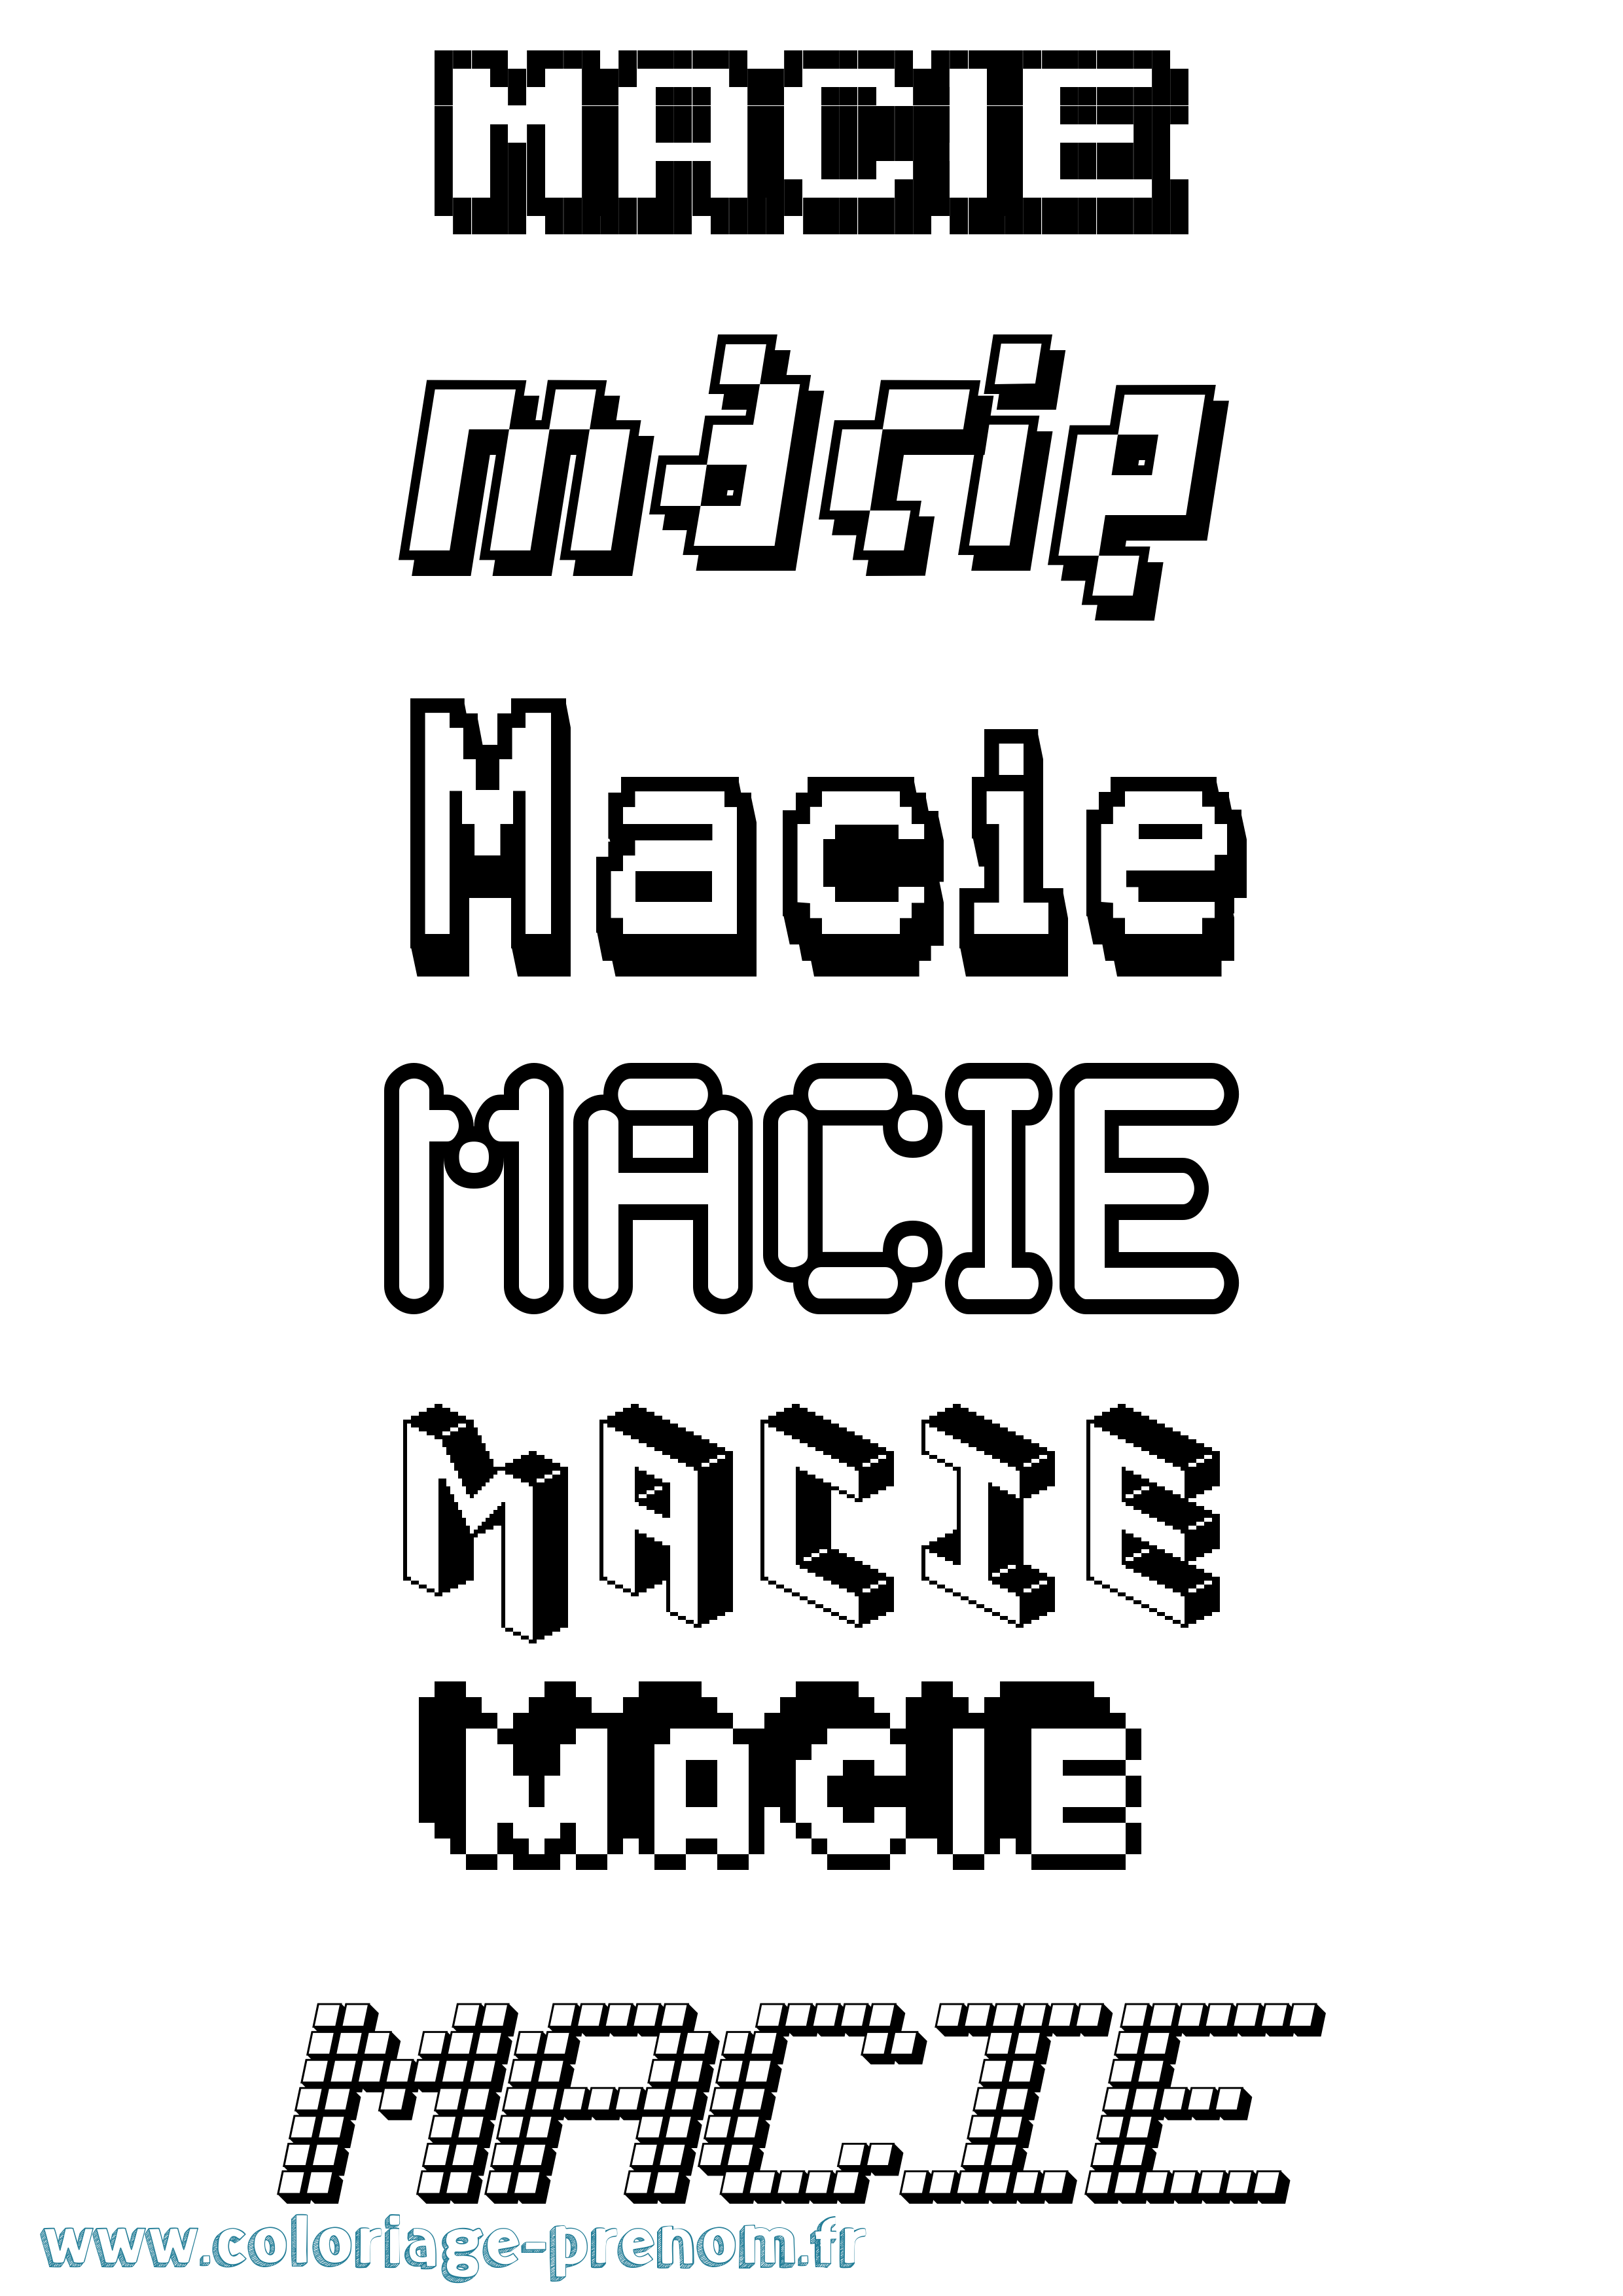 Coloriage prénom Macie Pixel